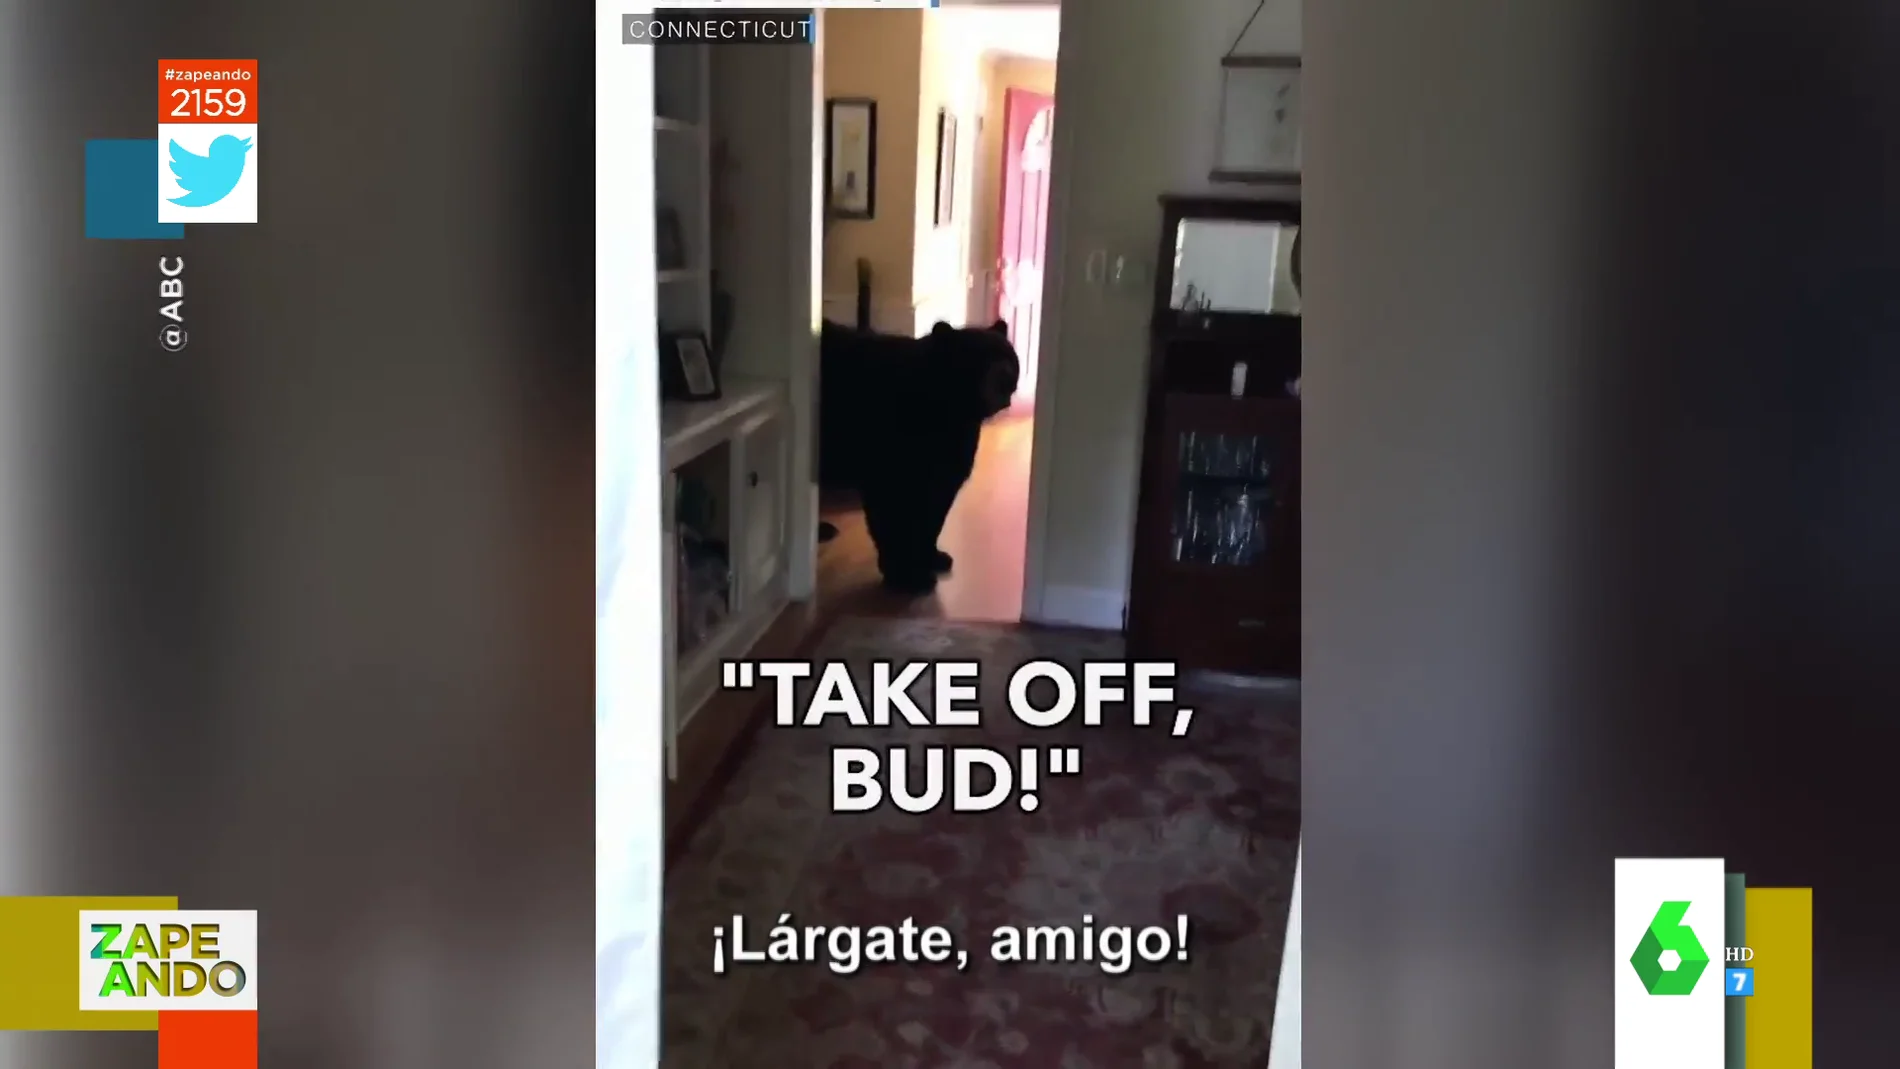 Un hombre consigue echar a un oso de su cocina a gritos